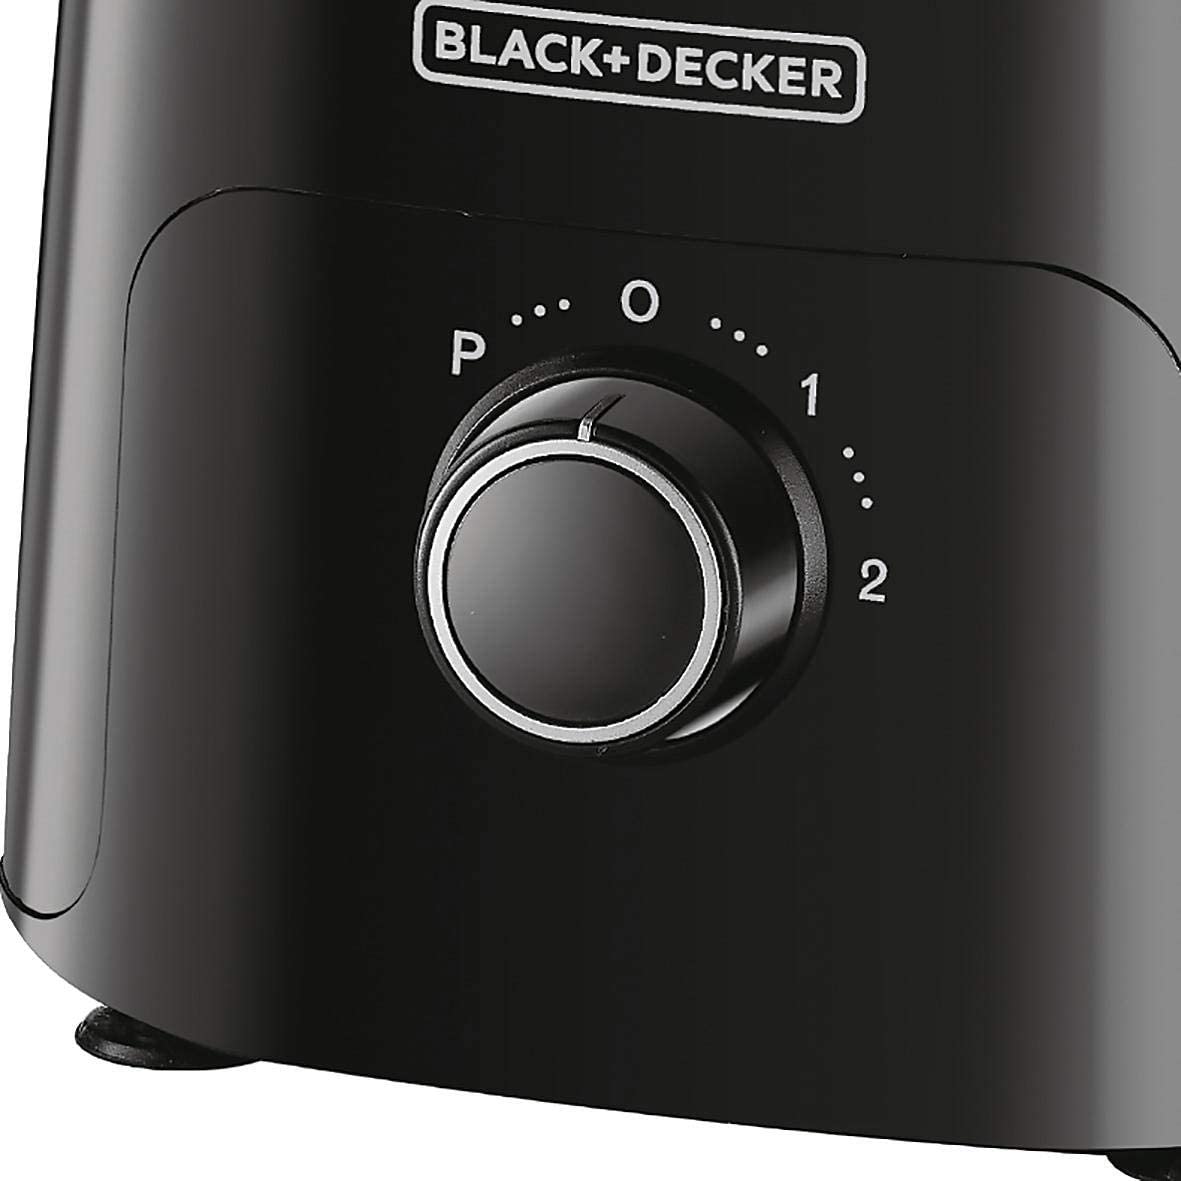 Black+Decker 750W Food Processor